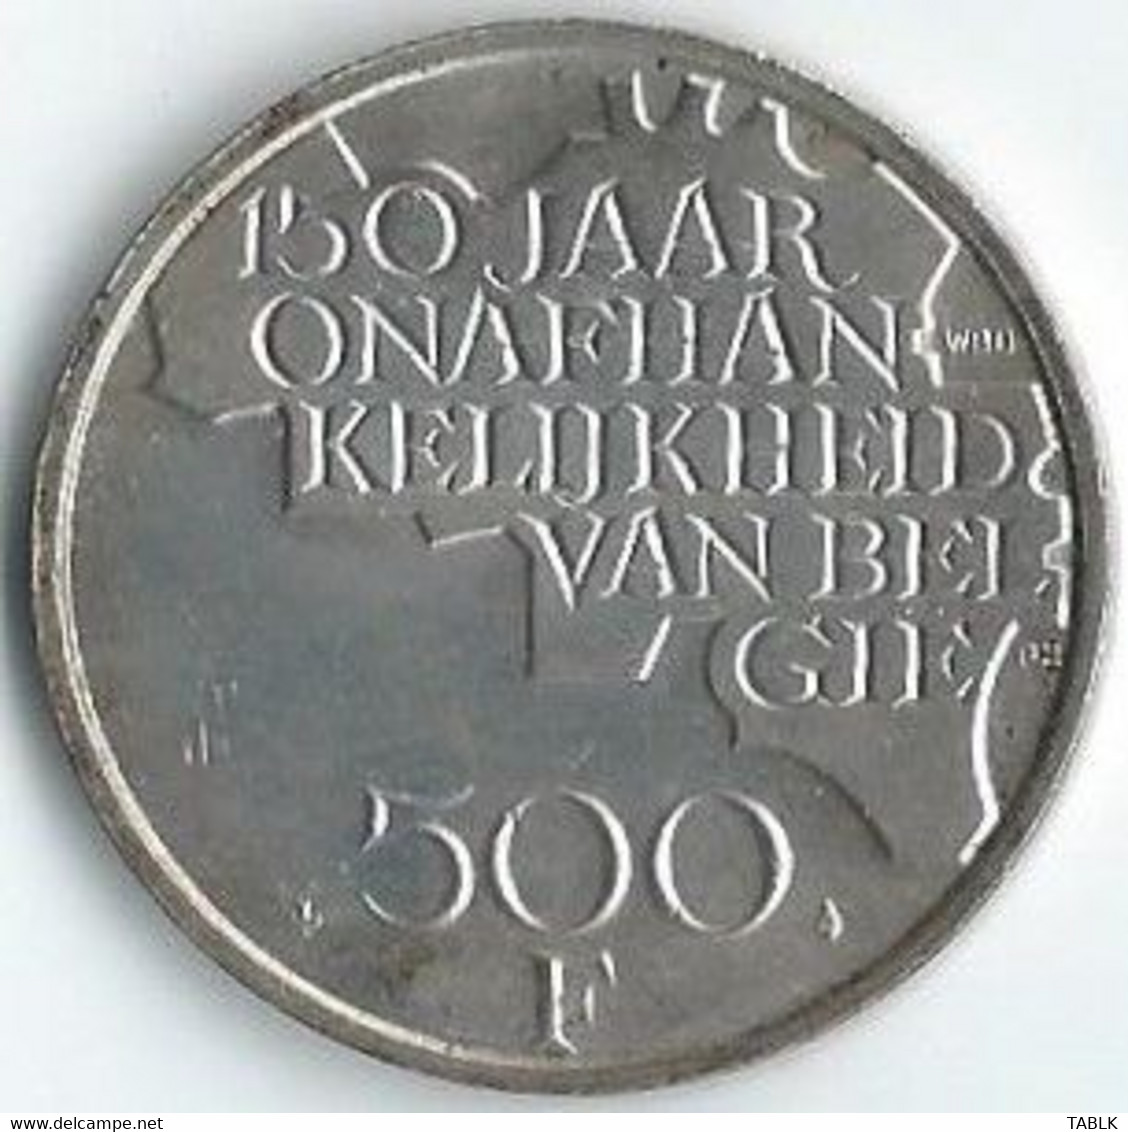 MT007 - BELGIË - BELGIUM - 500 FRANK 1980 - VLAAMS - 500 Francs